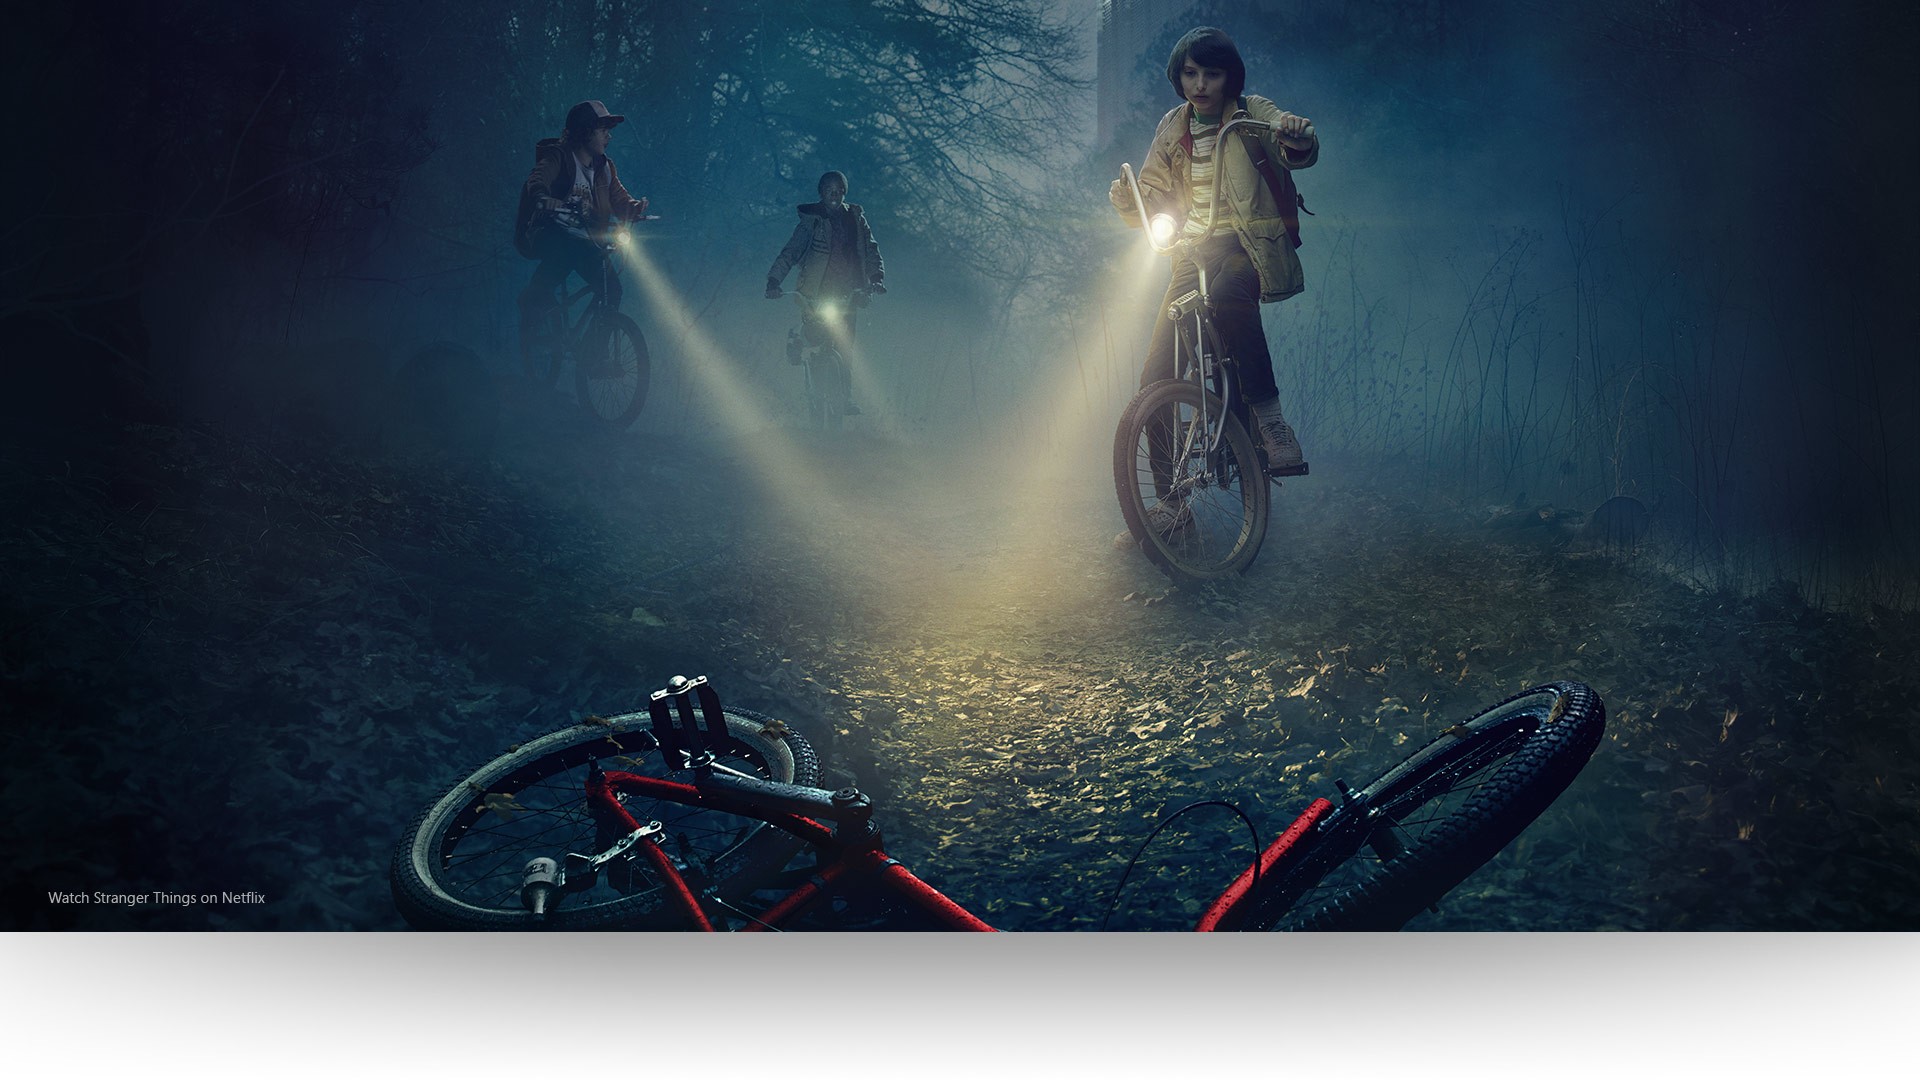 「Stranger Things」 ‐ ダスティン、ルーカス、マイクは、暗い森の小道の捨てられた自転車に照明をかざします。Netflix で「Stranger Things」を見る。